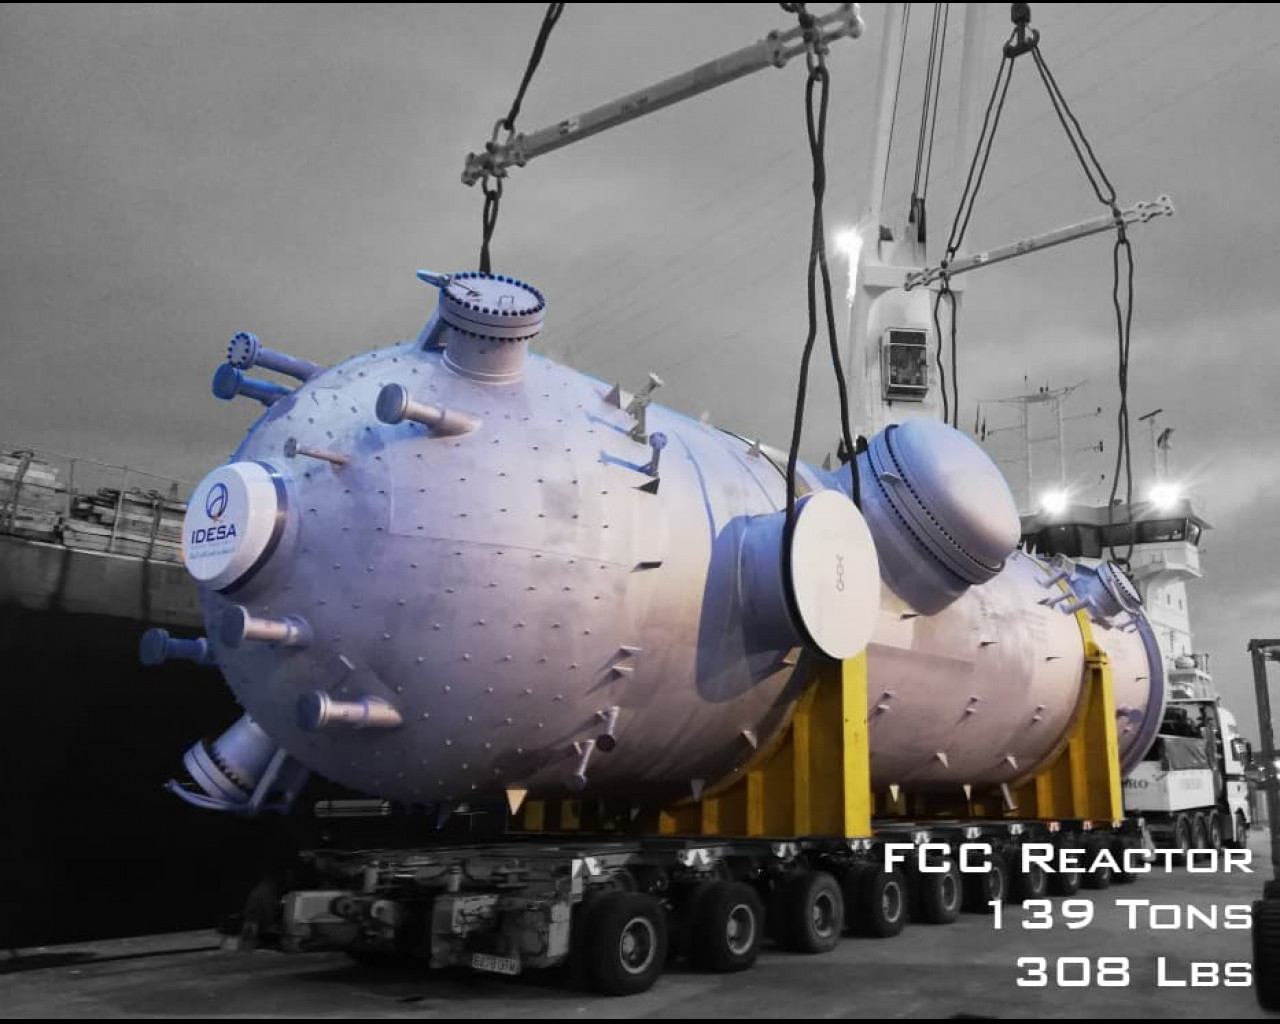 FCC Reactor- Cepsa